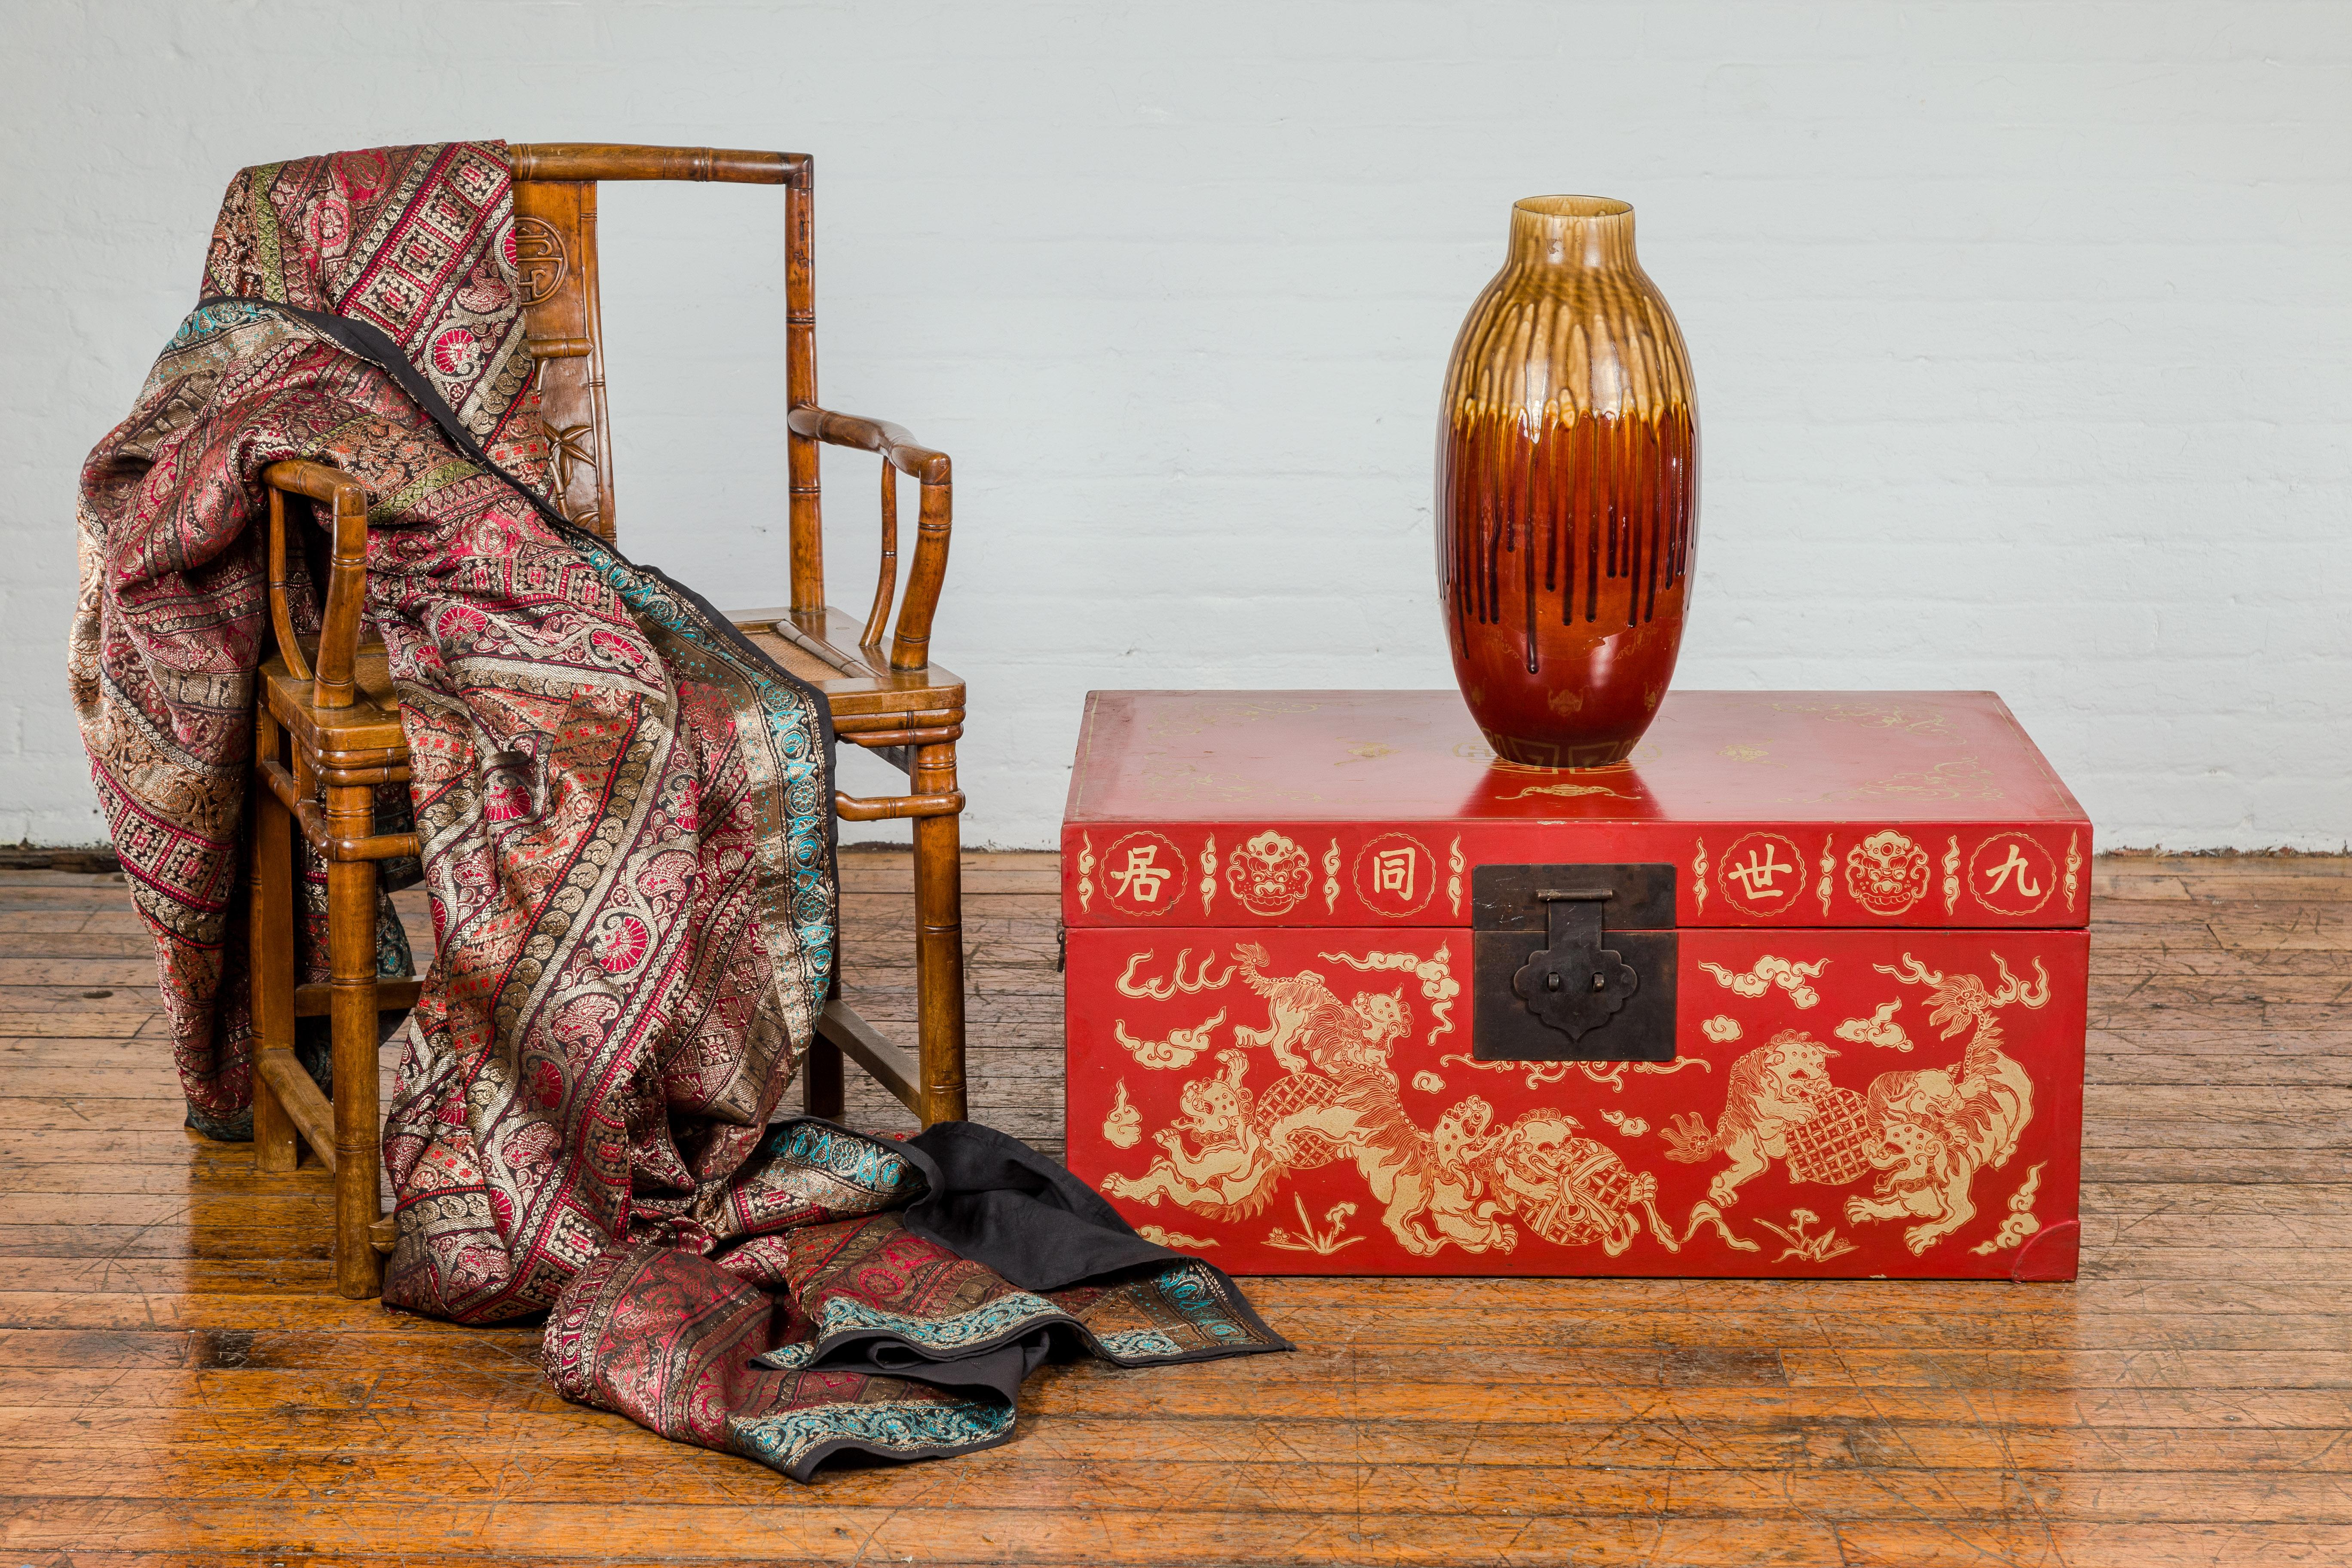 Chinesische Rotlacktruhe im Vintage-Look mit vergoldeten Fledermaus-, Wächterlöwen- und Wolkenmotiven. Diese chinesische Rotlacktruhe im Vintage-Stil ist ein beeindruckendes Beispiel für traditionelle Handwerkskunst in Verbindung mit symbolischer